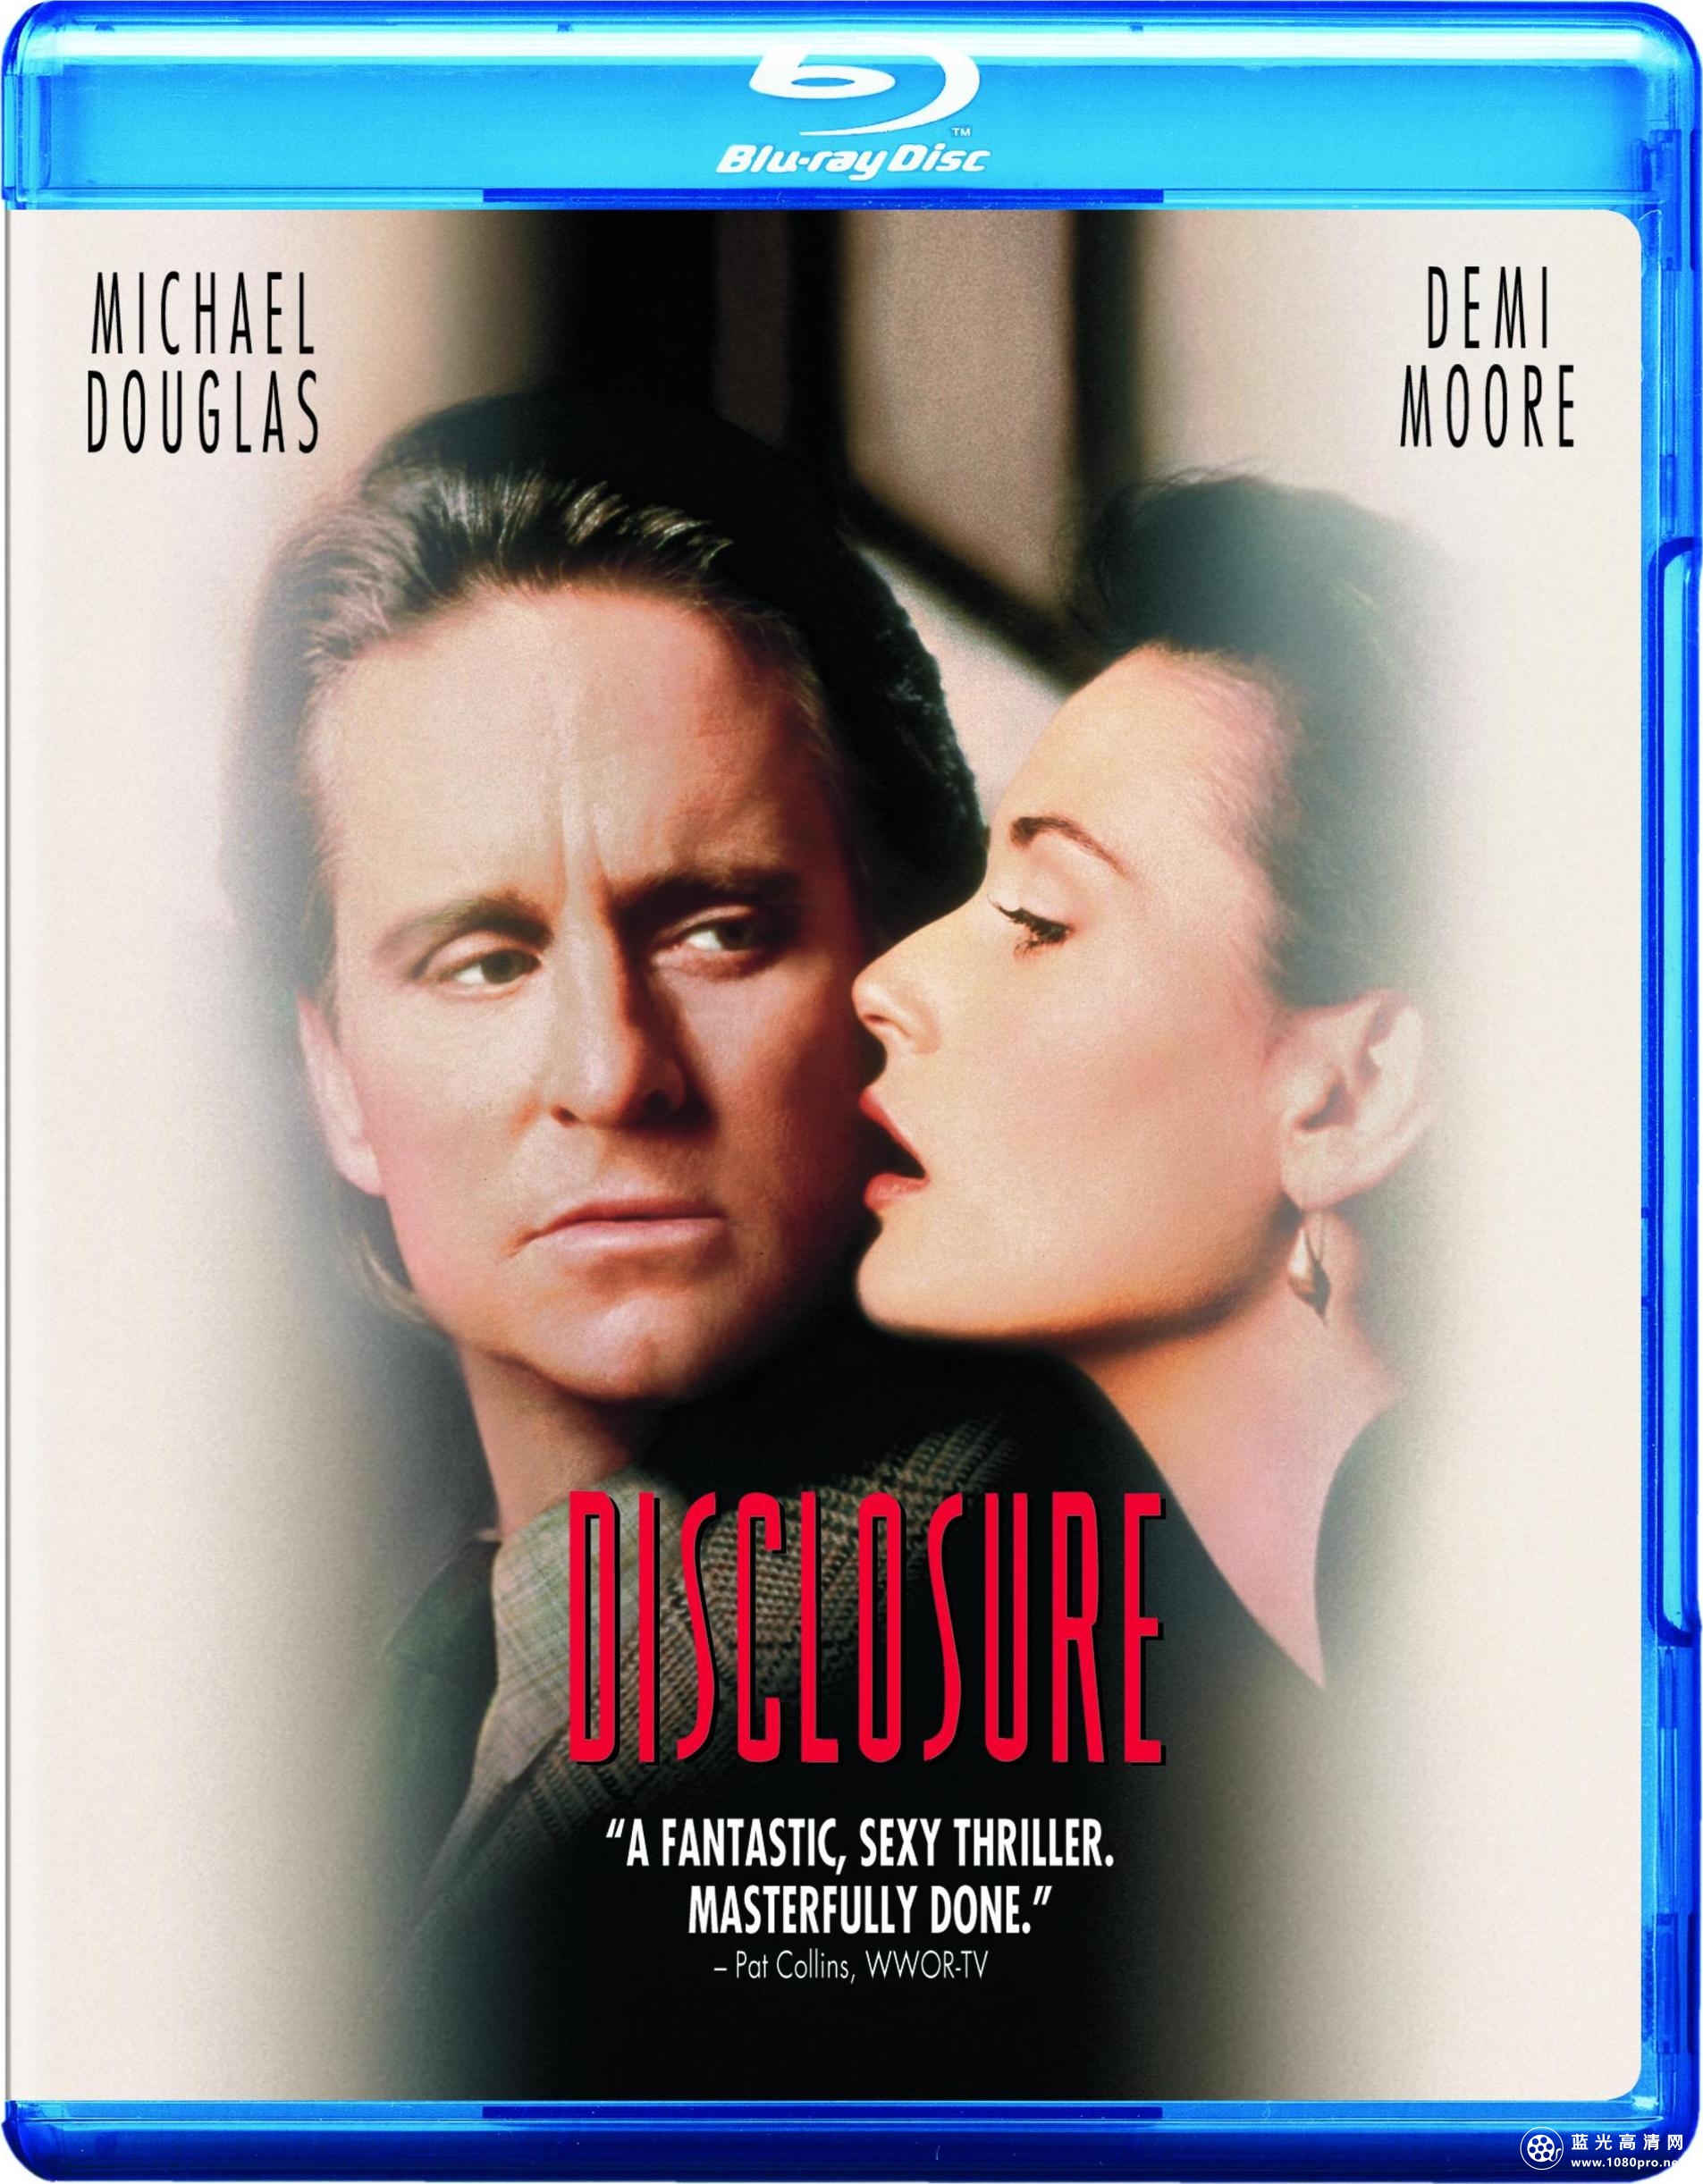 叛逆性骚扰 Disclosure.1994.BluRay.720p.DTS.x264-CHD 5.54G-1.jpg